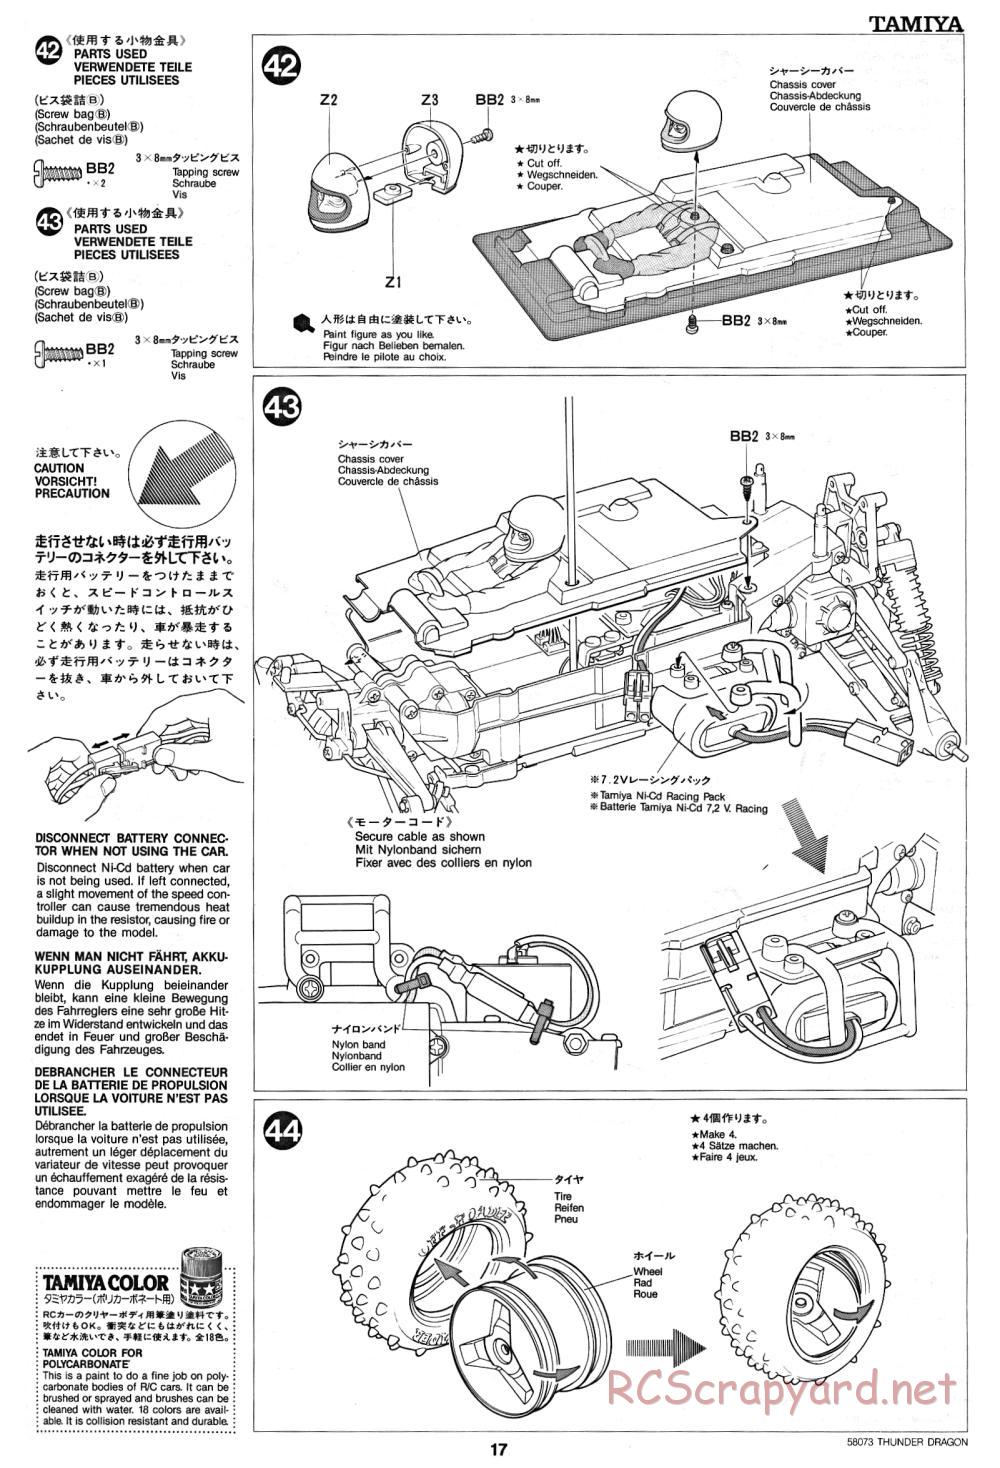 Tamiya - Thunder Dragon - 58073 - Manual - Page 17